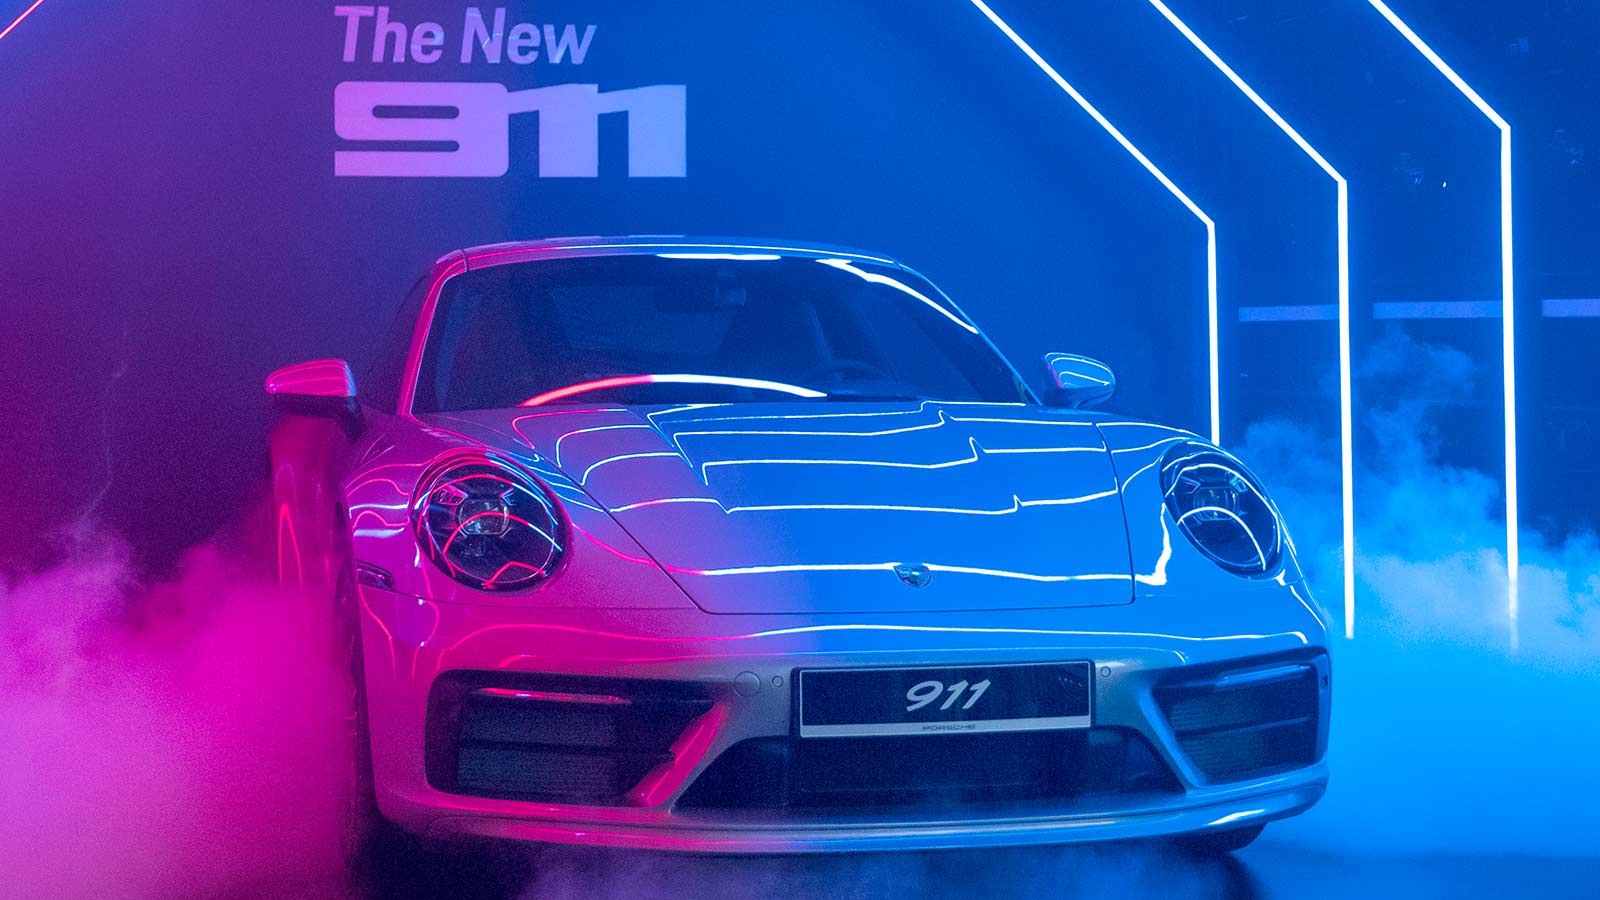 Hãy trang trí cho máy tính của bạn với hình nền siêu xe Porsche để cảm nhận được lối sống sang trọng và đẳng cấp thế giới.